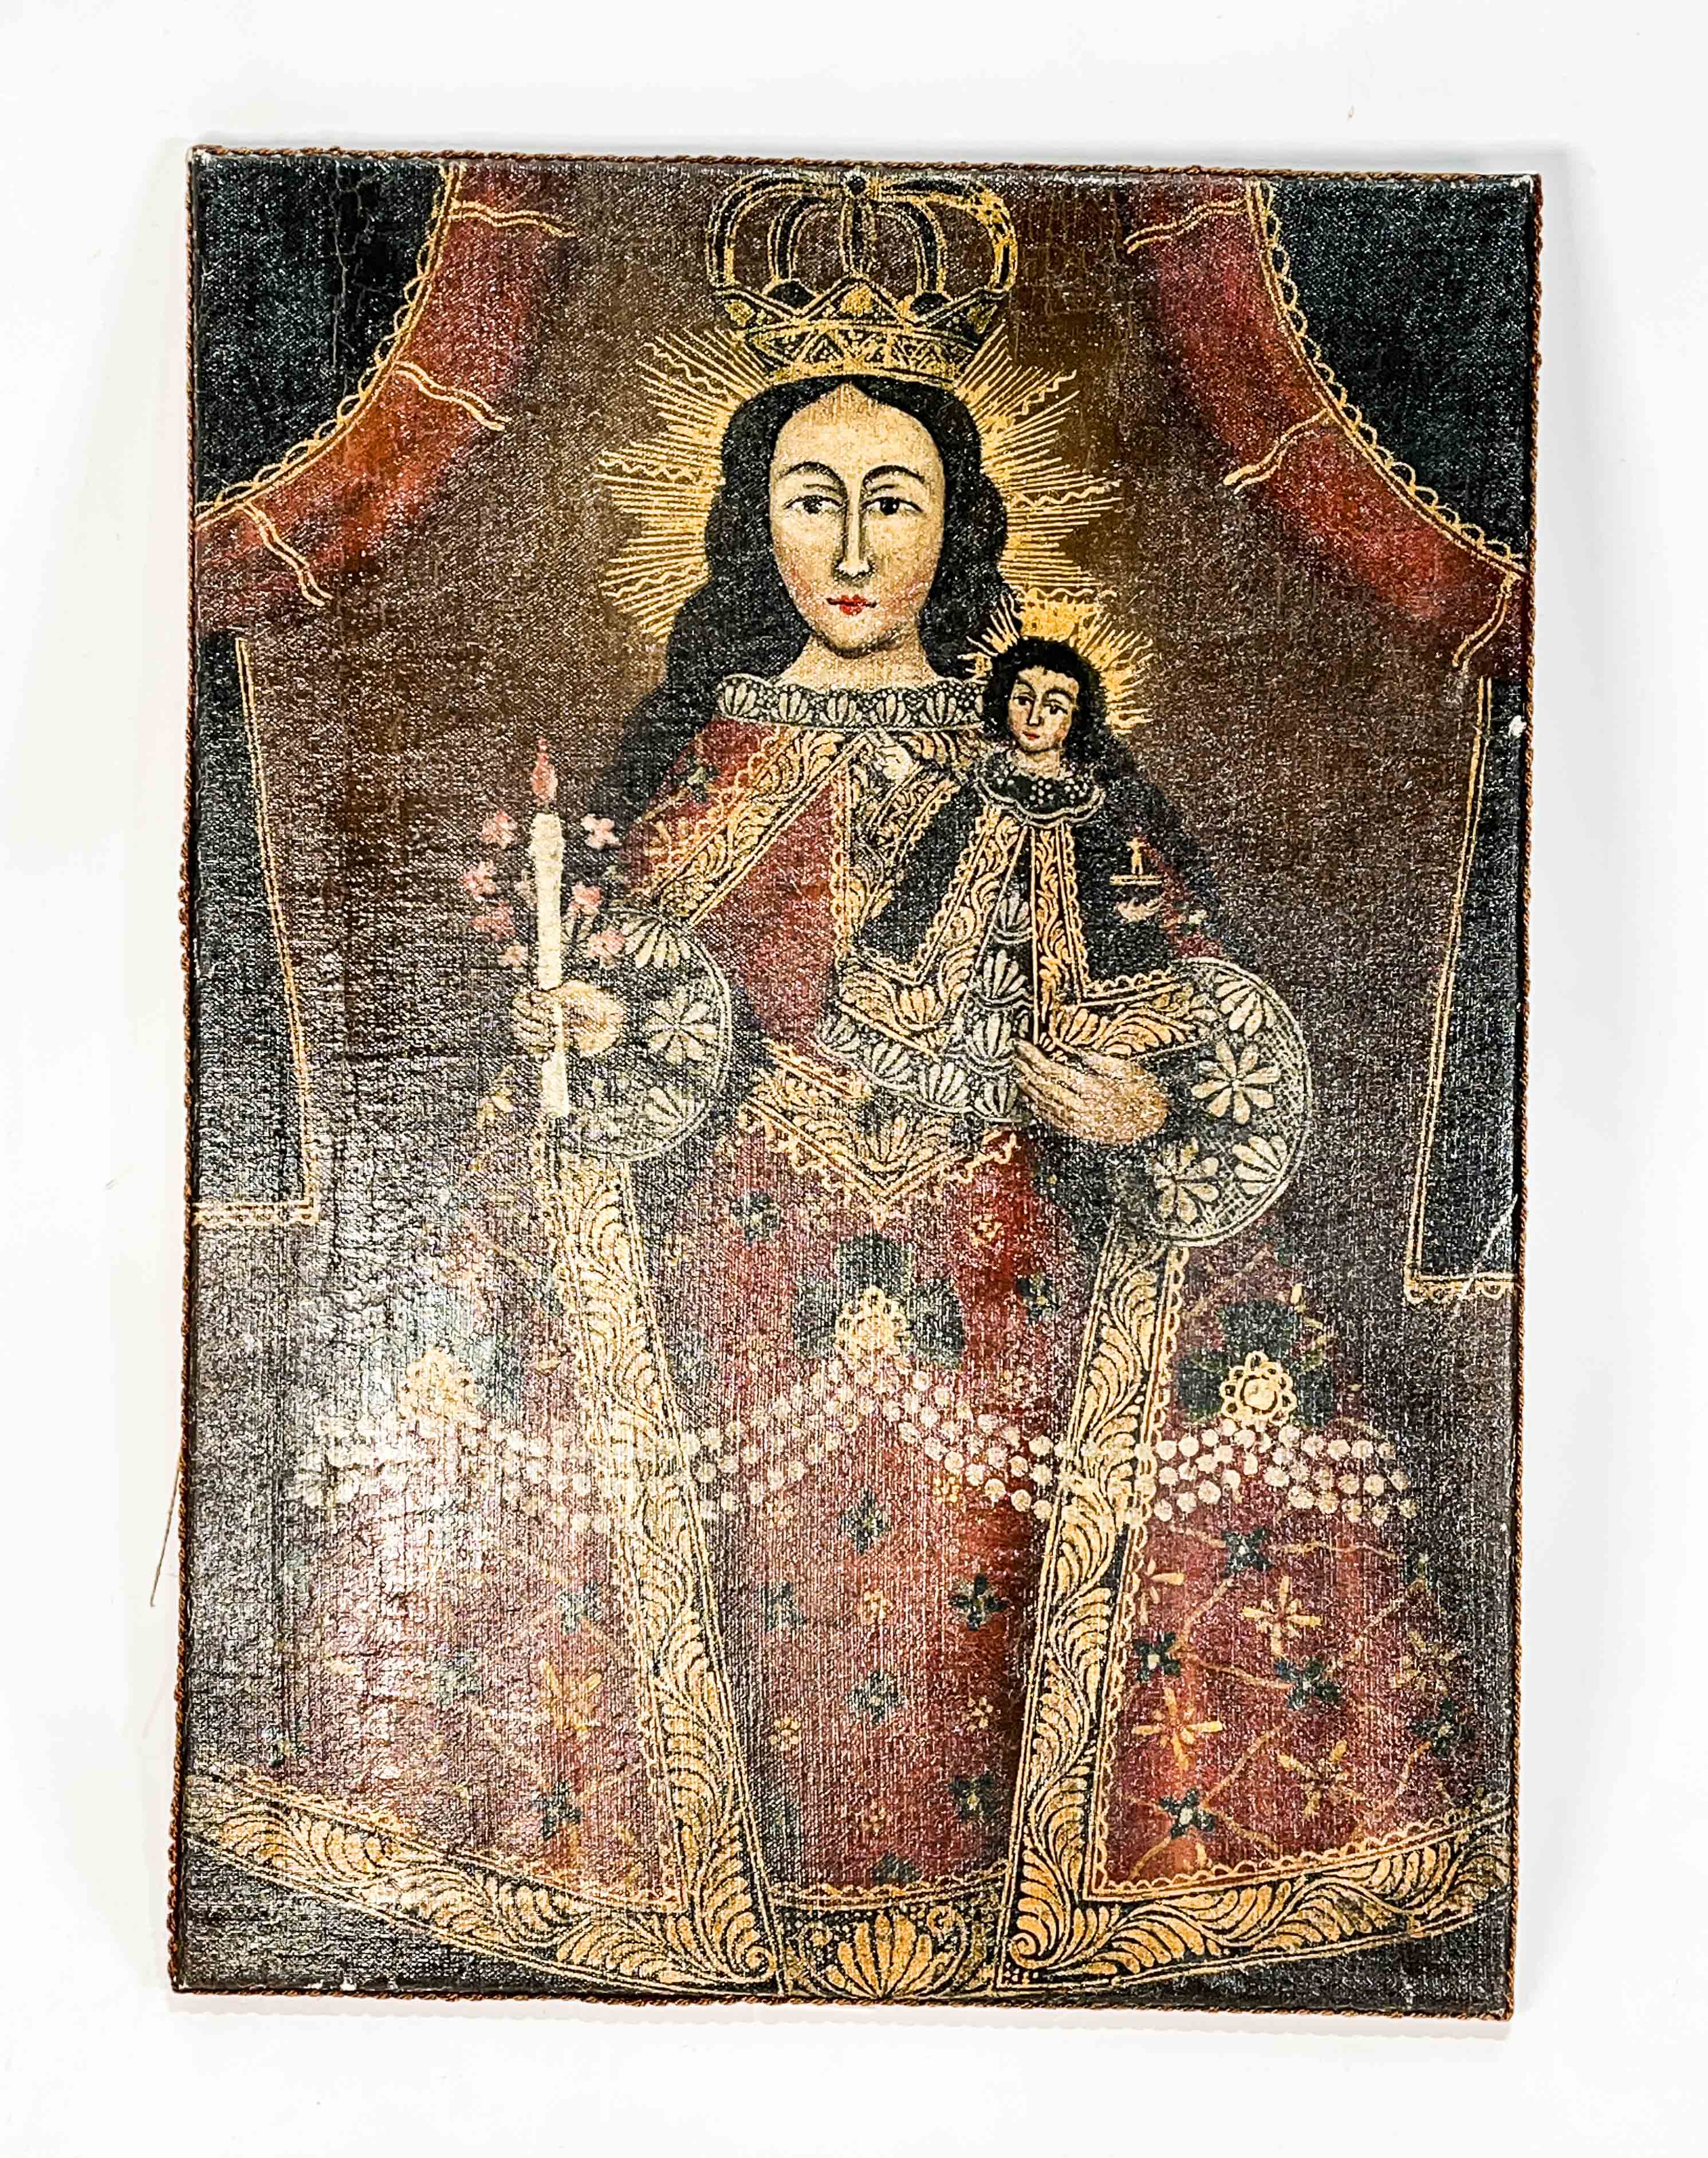 Buda y Luna XXL (150 cm x 70 cm) – Cuadros Decorativos